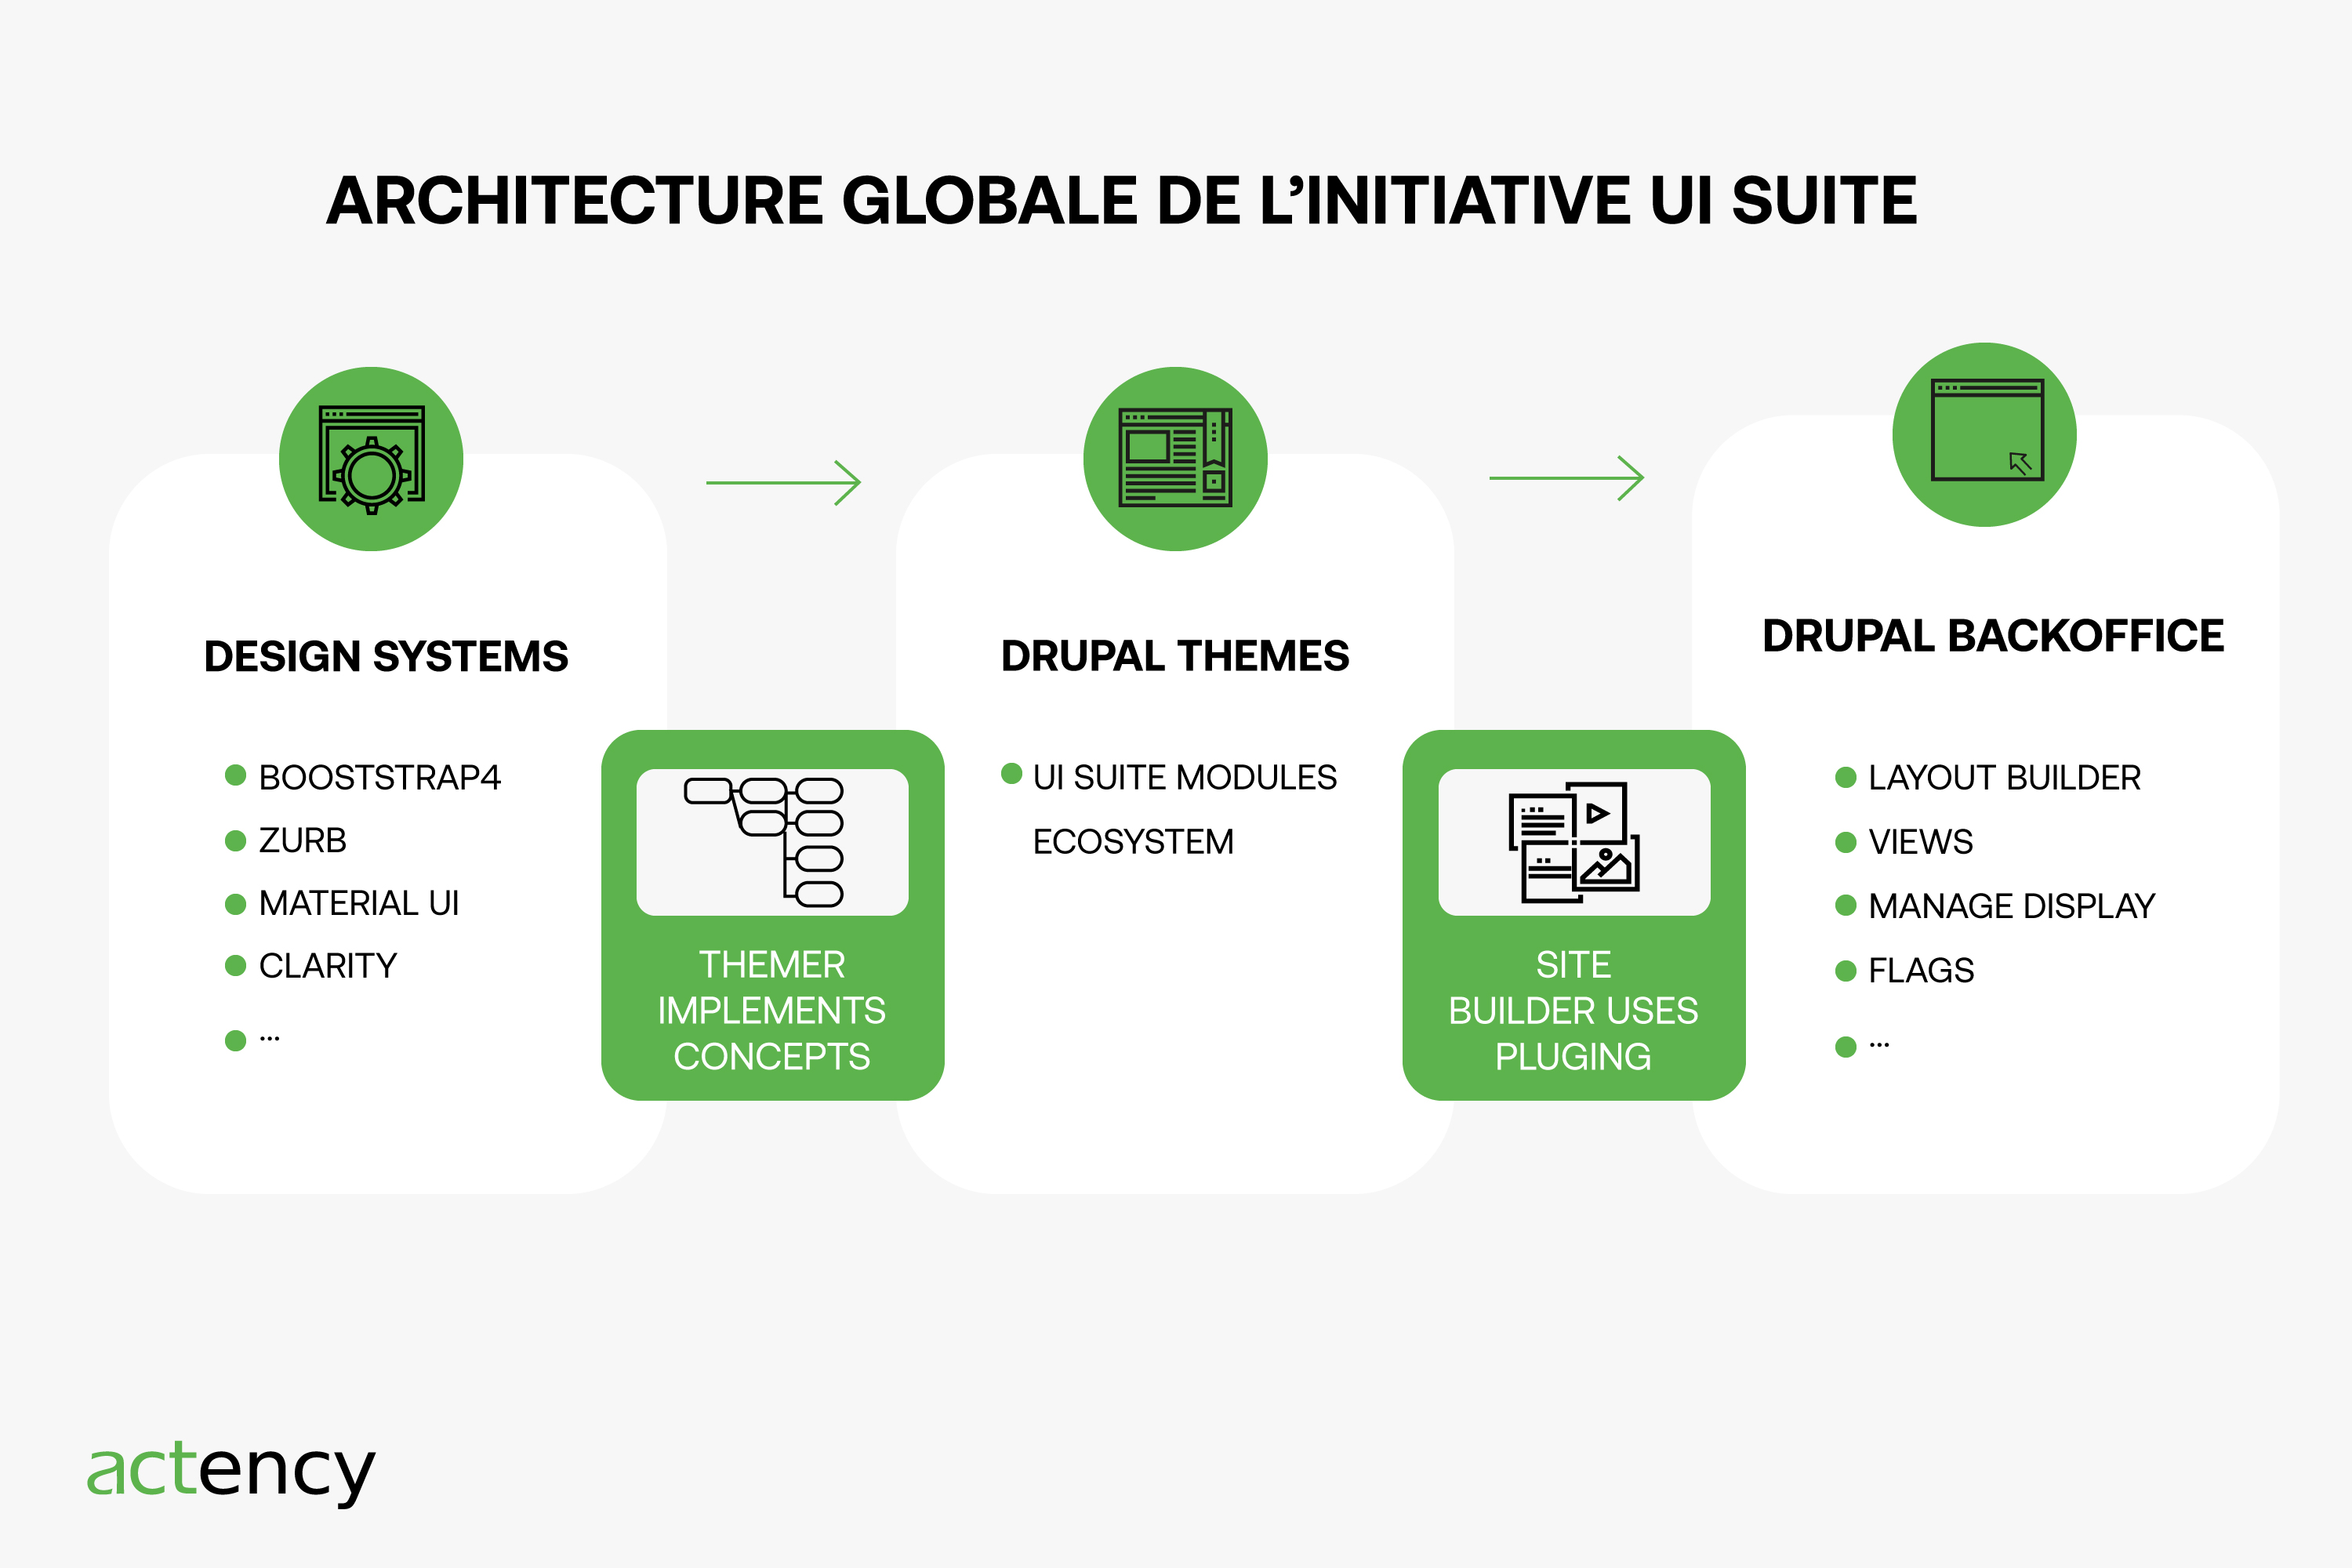 Actency-DESIGN-SYSTEM-DXP-DRUPAL-architecture-global-initiative-ui-suite